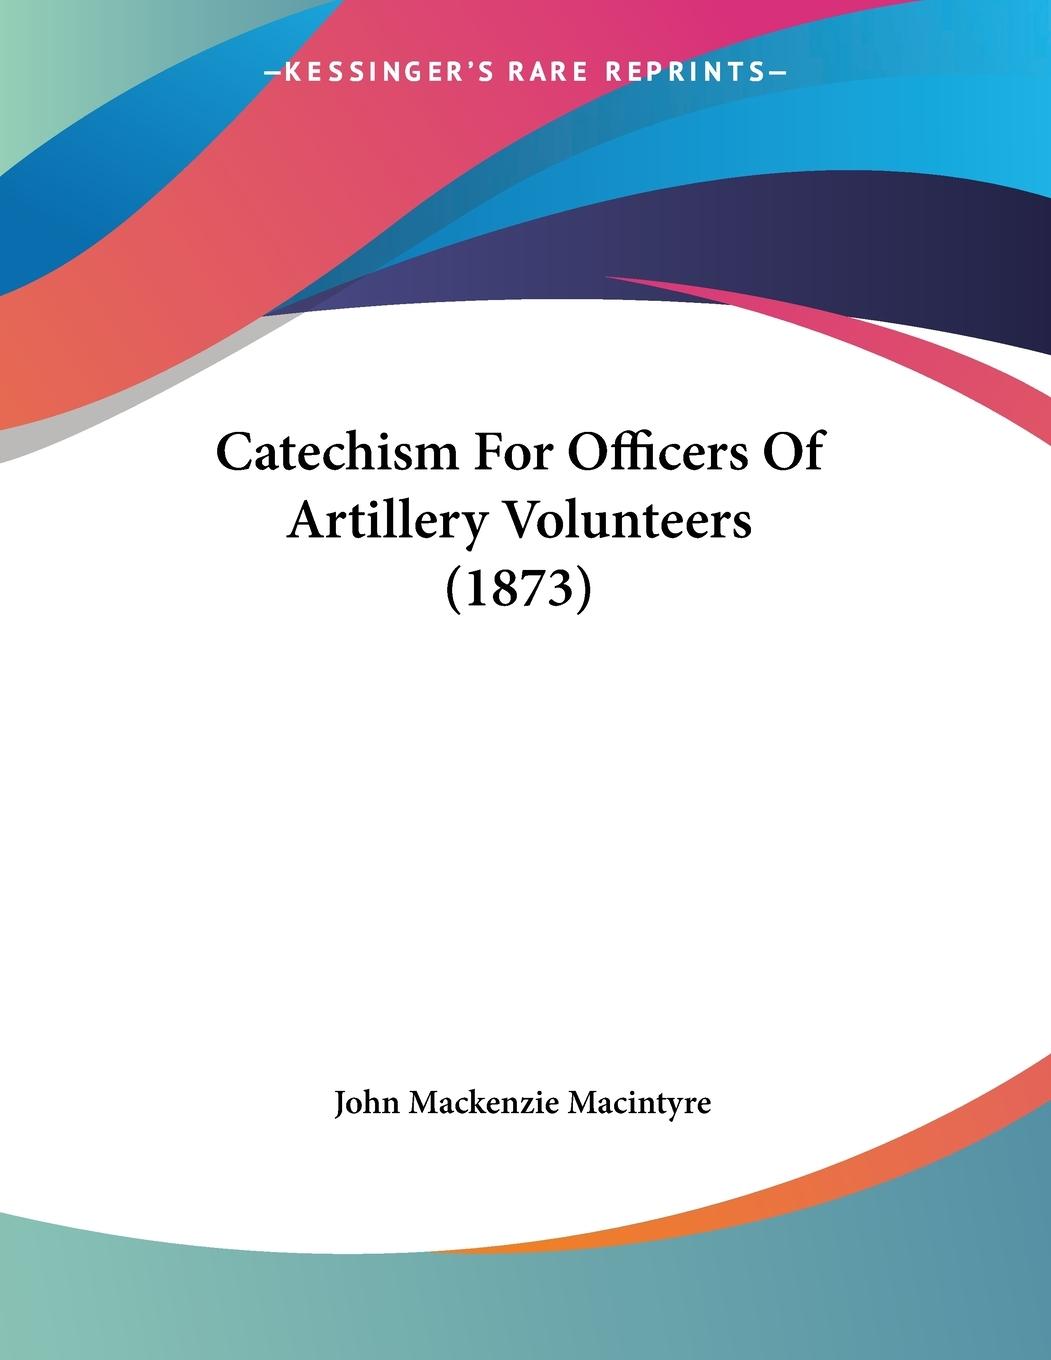 Catechism For Officers Of Artillery Volunteers (1873) - Macintyre, John Mackenzie